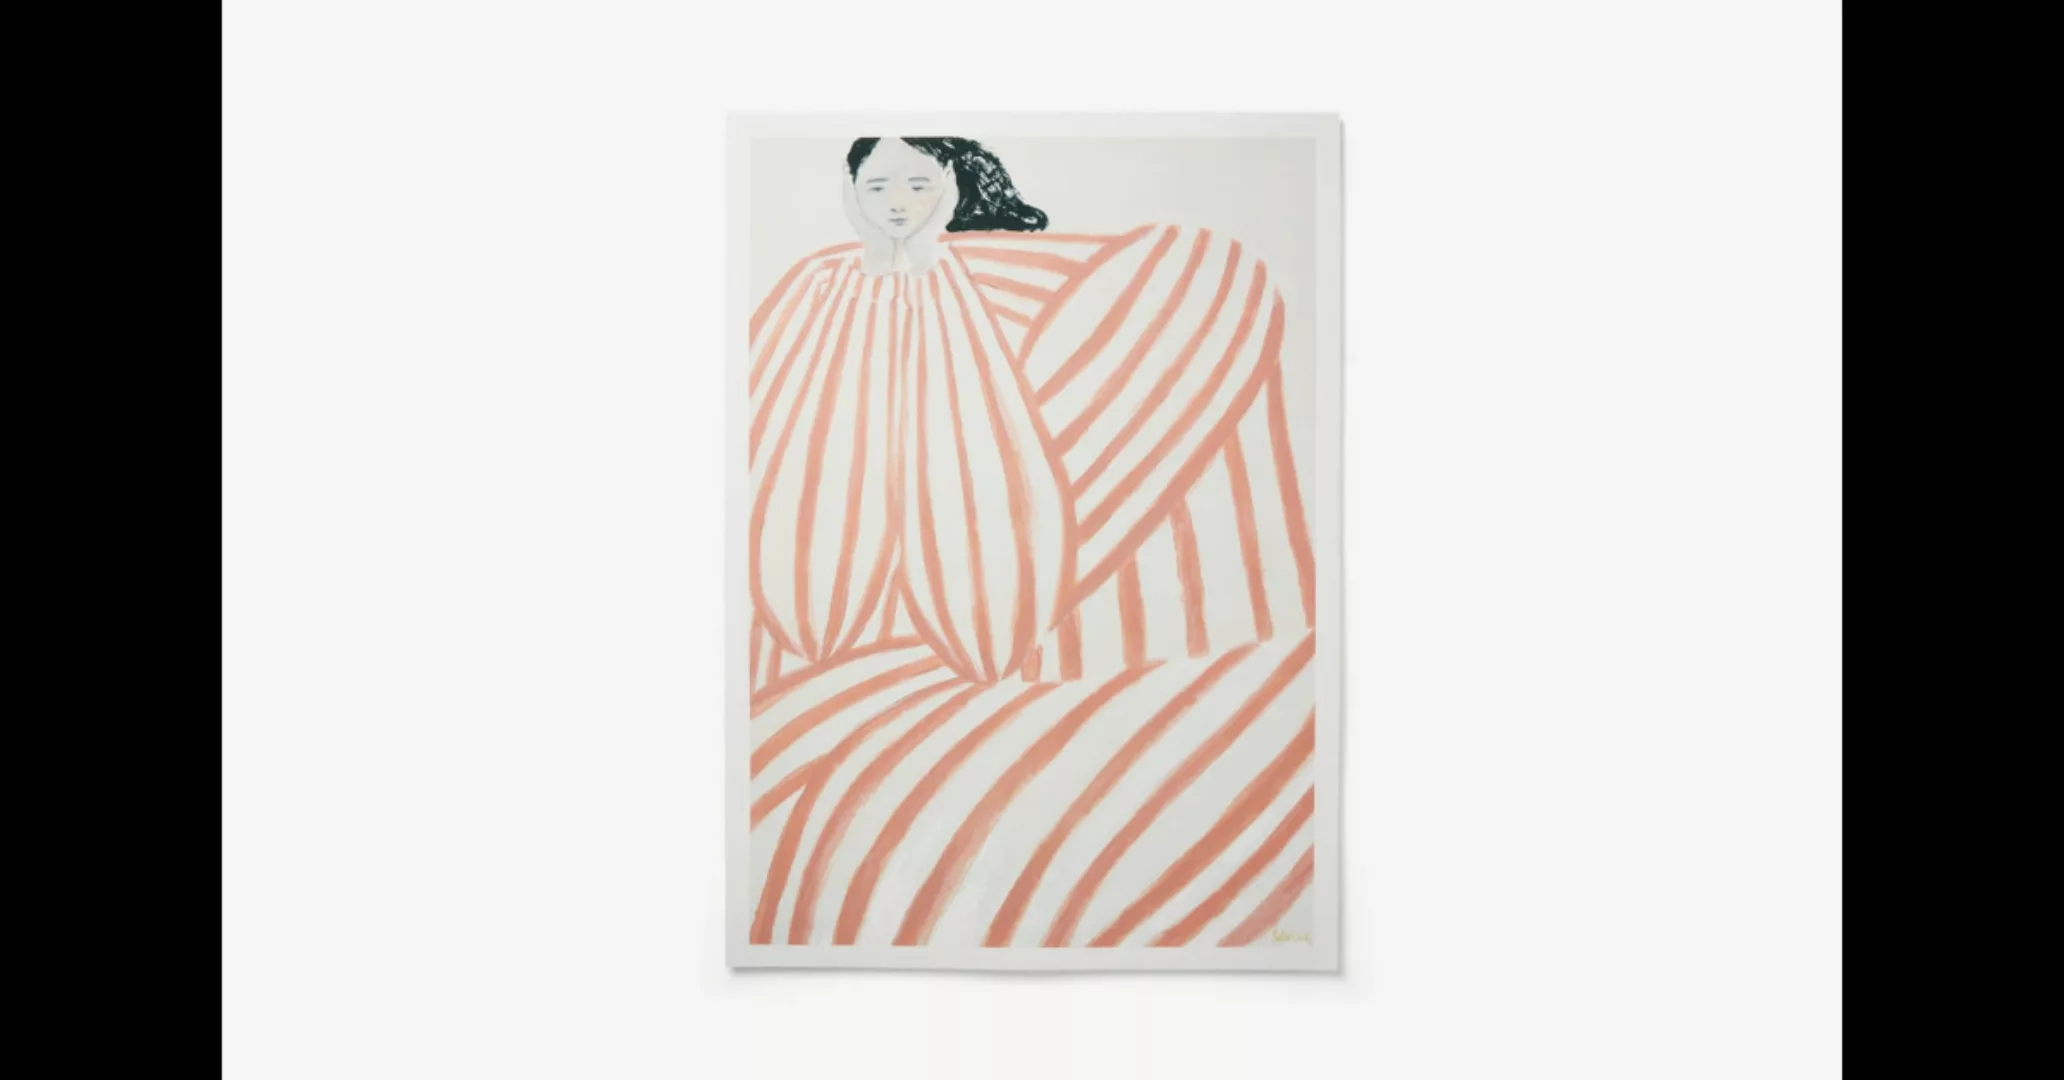 Still Waiting von Sofia Lind (50 x 70 cm) - MADE.com günstig online kaufen